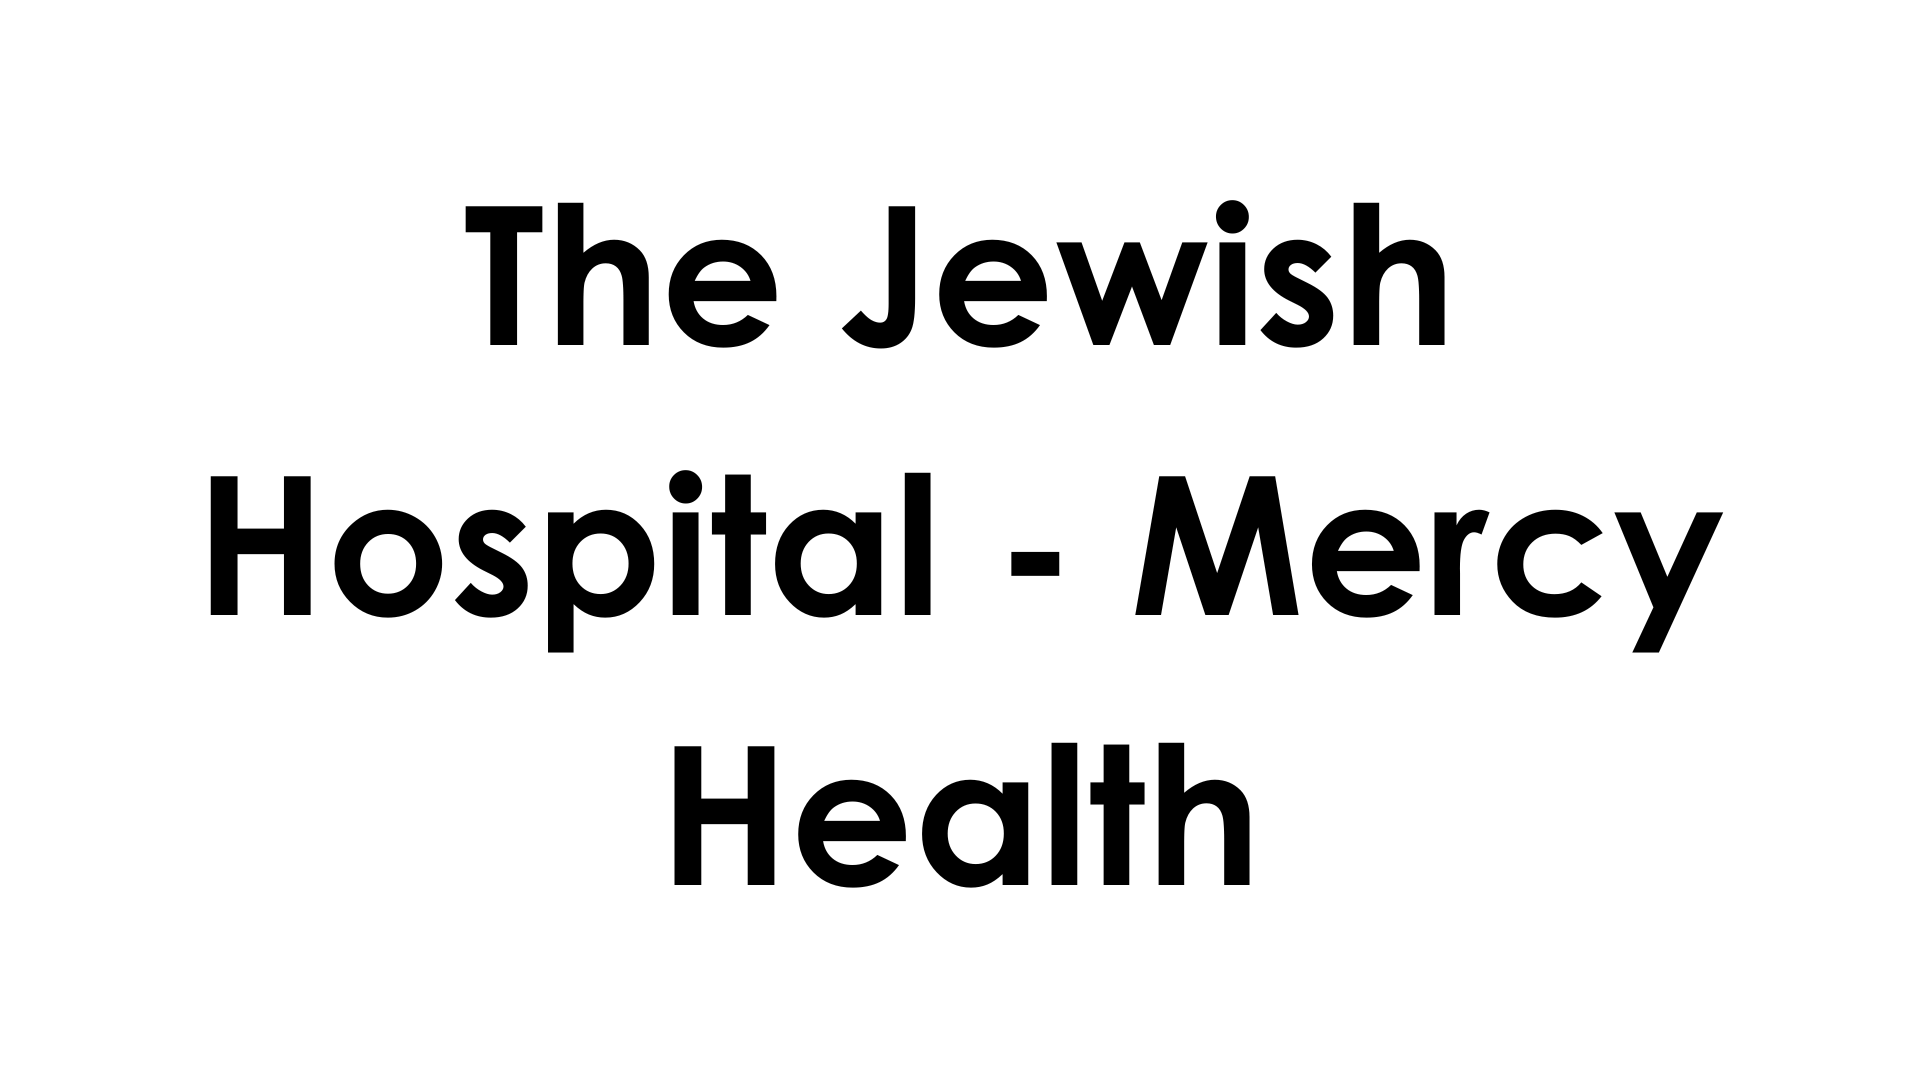 The Jewish Hospital - Mercy Health